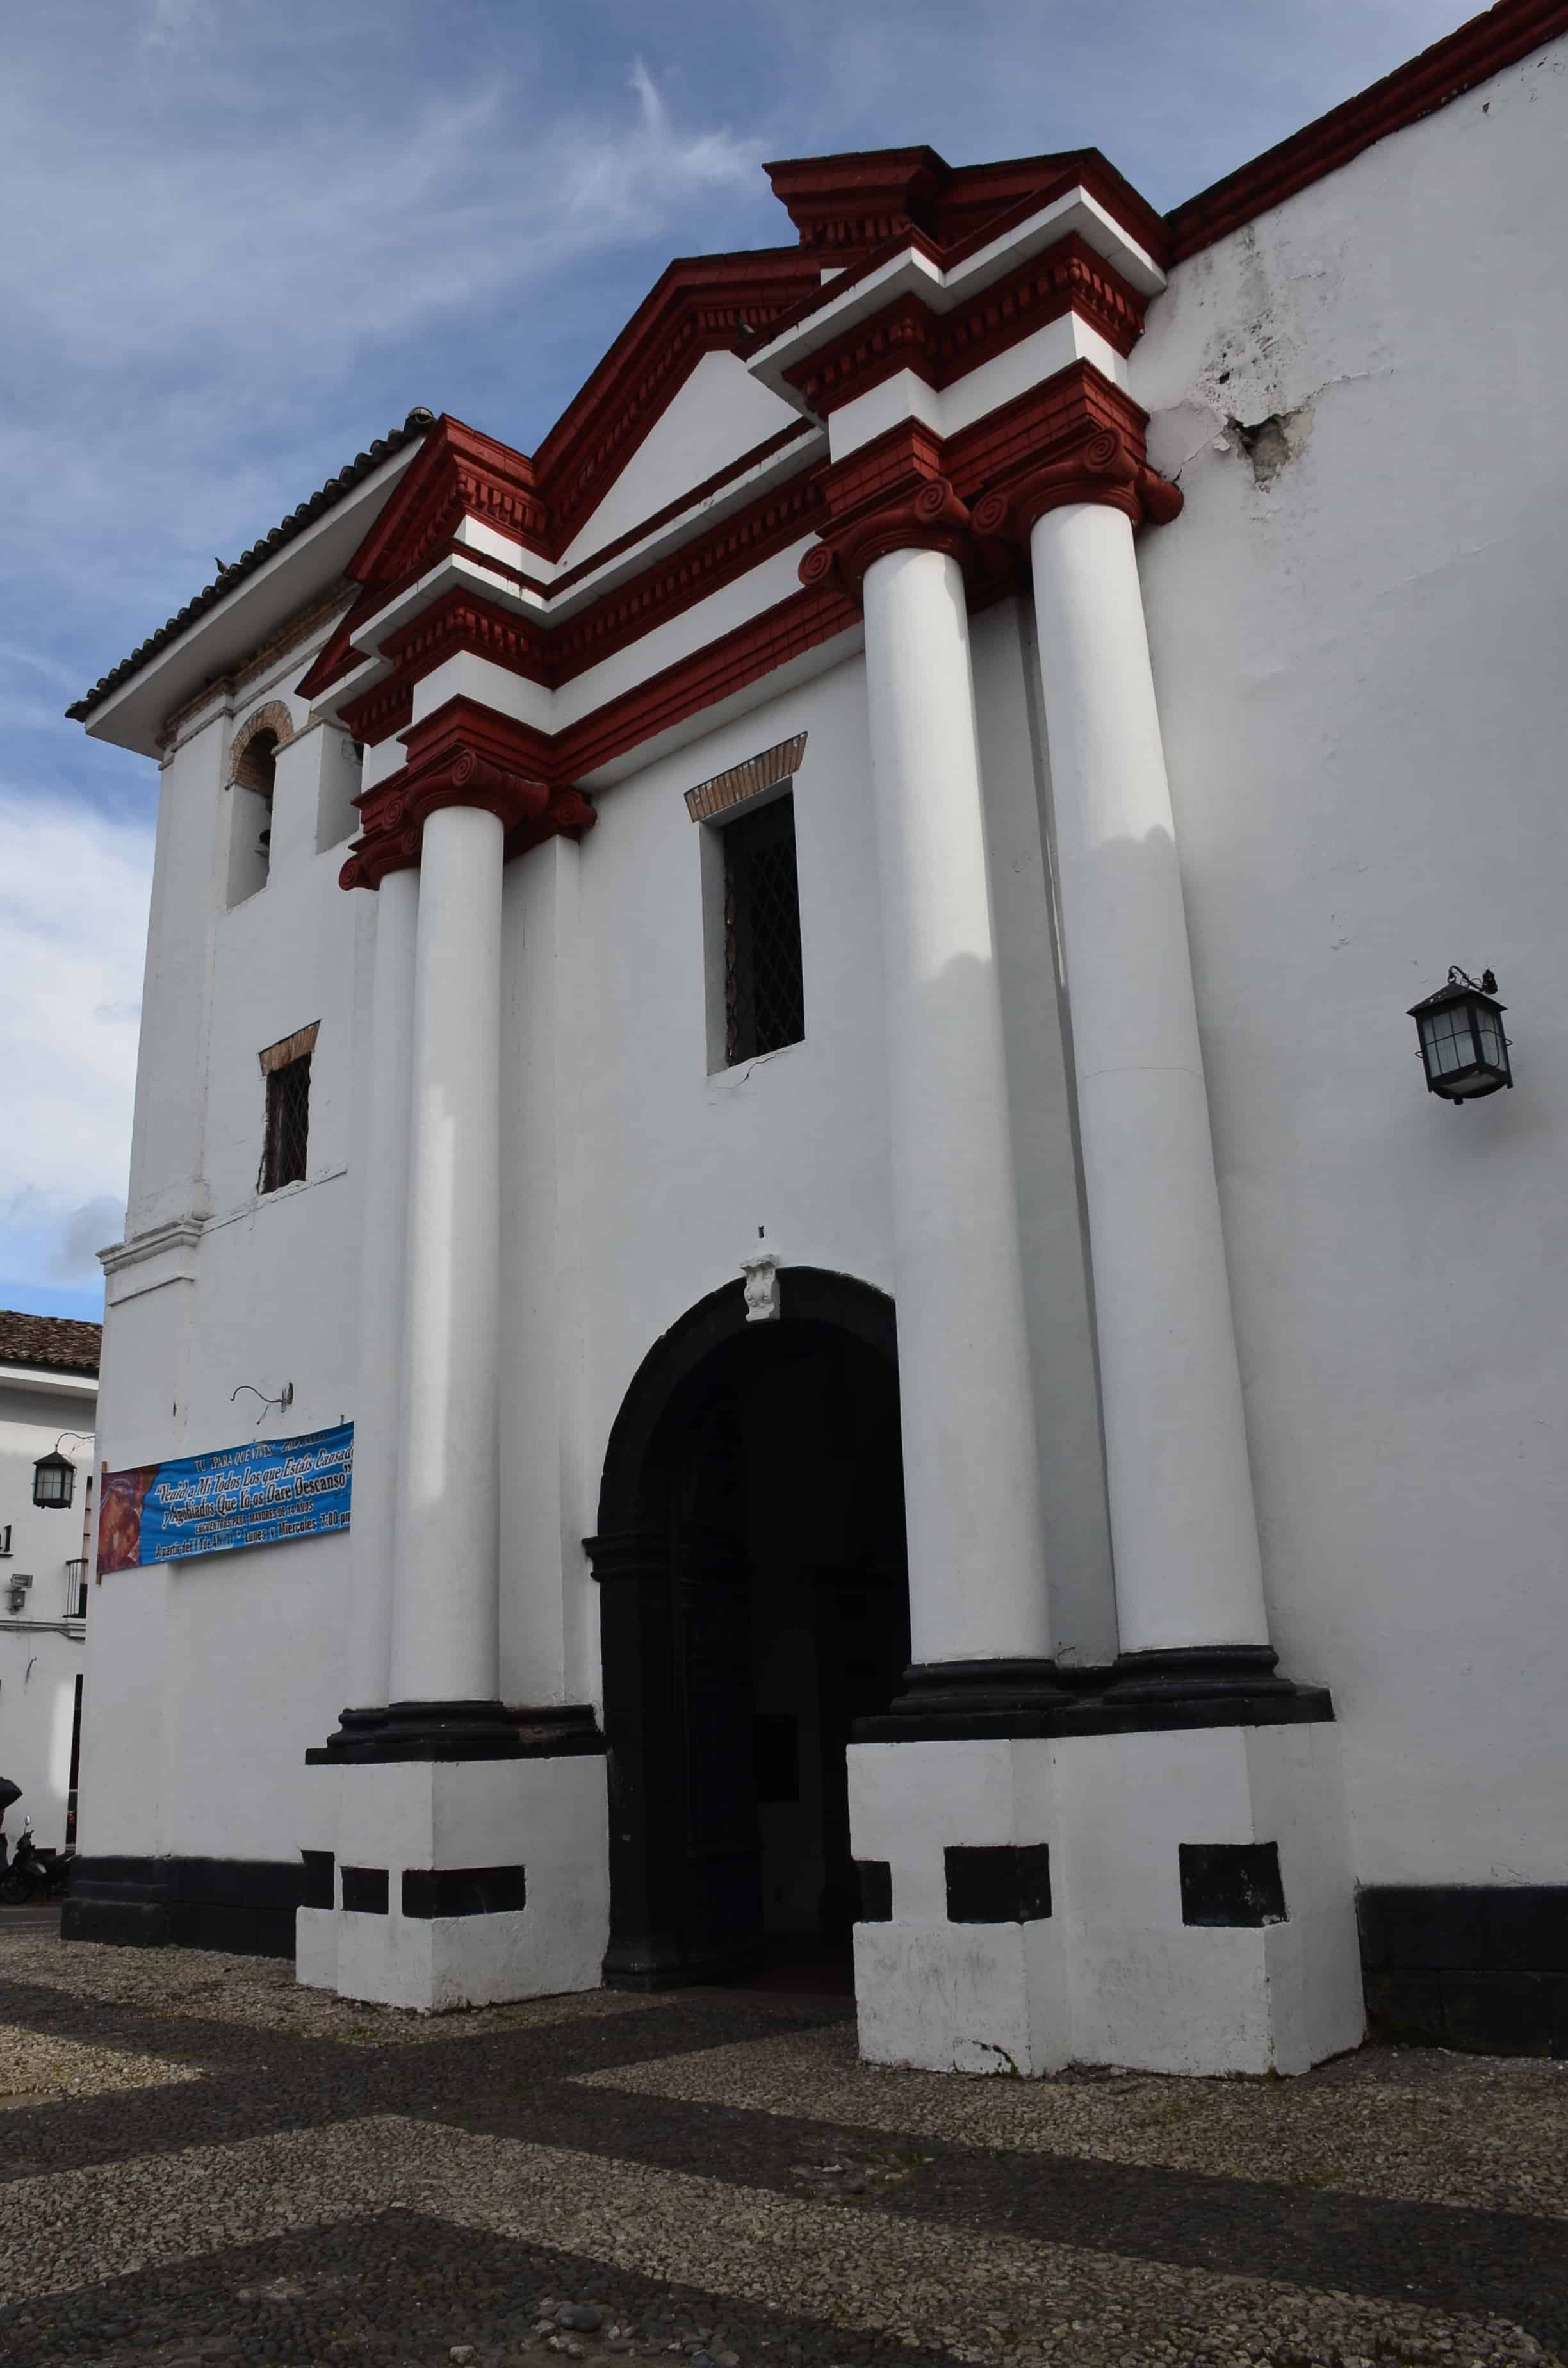 Iglesia de San Agustín in Popayán, Cauca, Colombia